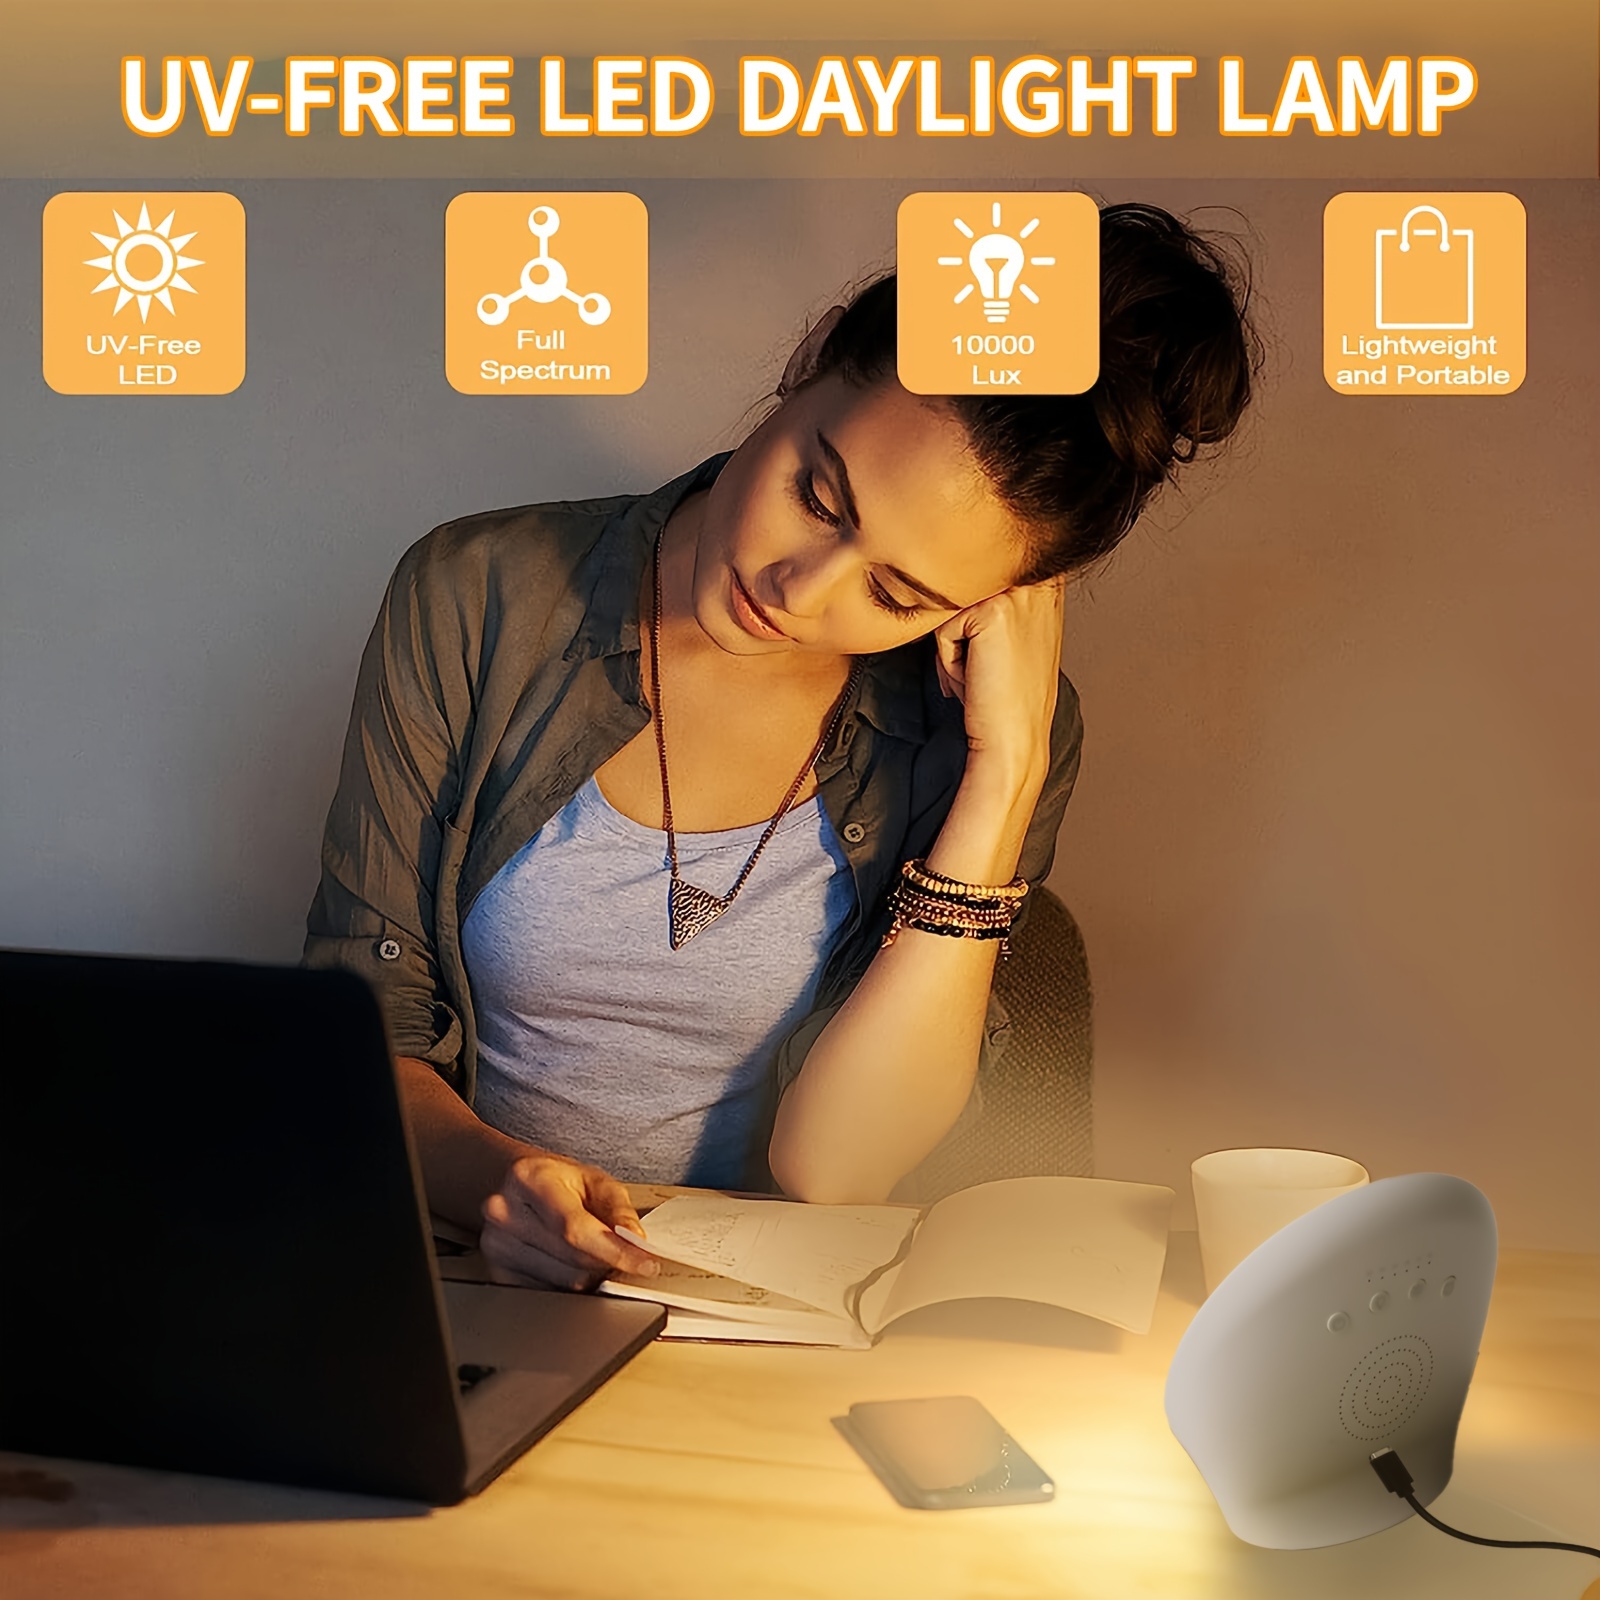 Lampe de luminothérapie 11000 lux sans UV Lampe Luminotherapie avec  Luminosité, Température de Couleur et Minuterie Réglables Lampe Lumiere du  Jour